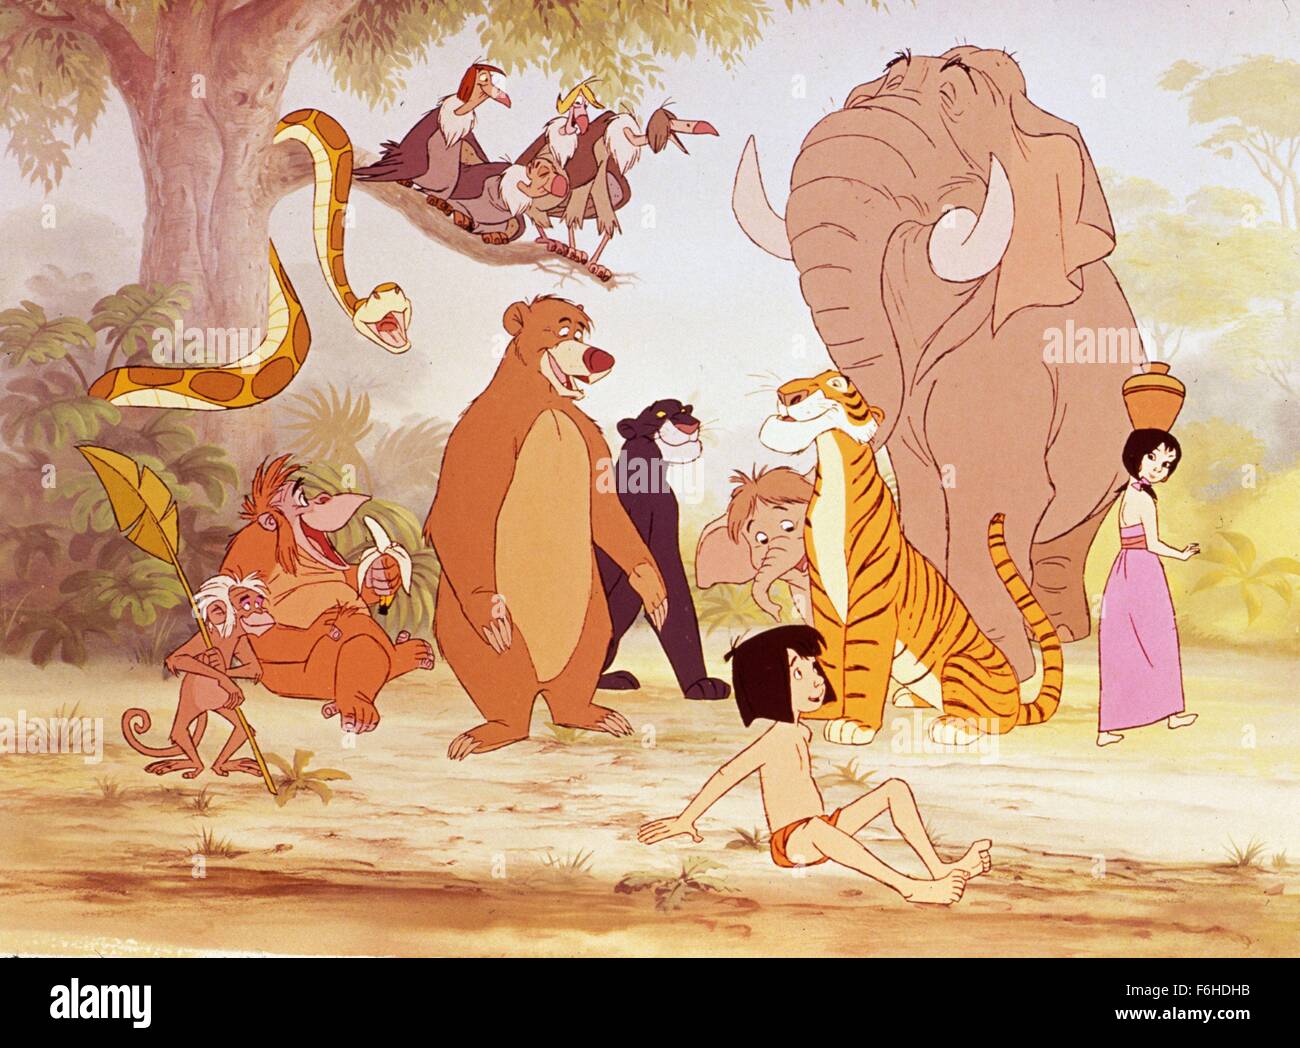 Disney: 'El Libro De La Selva', De Wolfgang Reitherman, 57% OFF